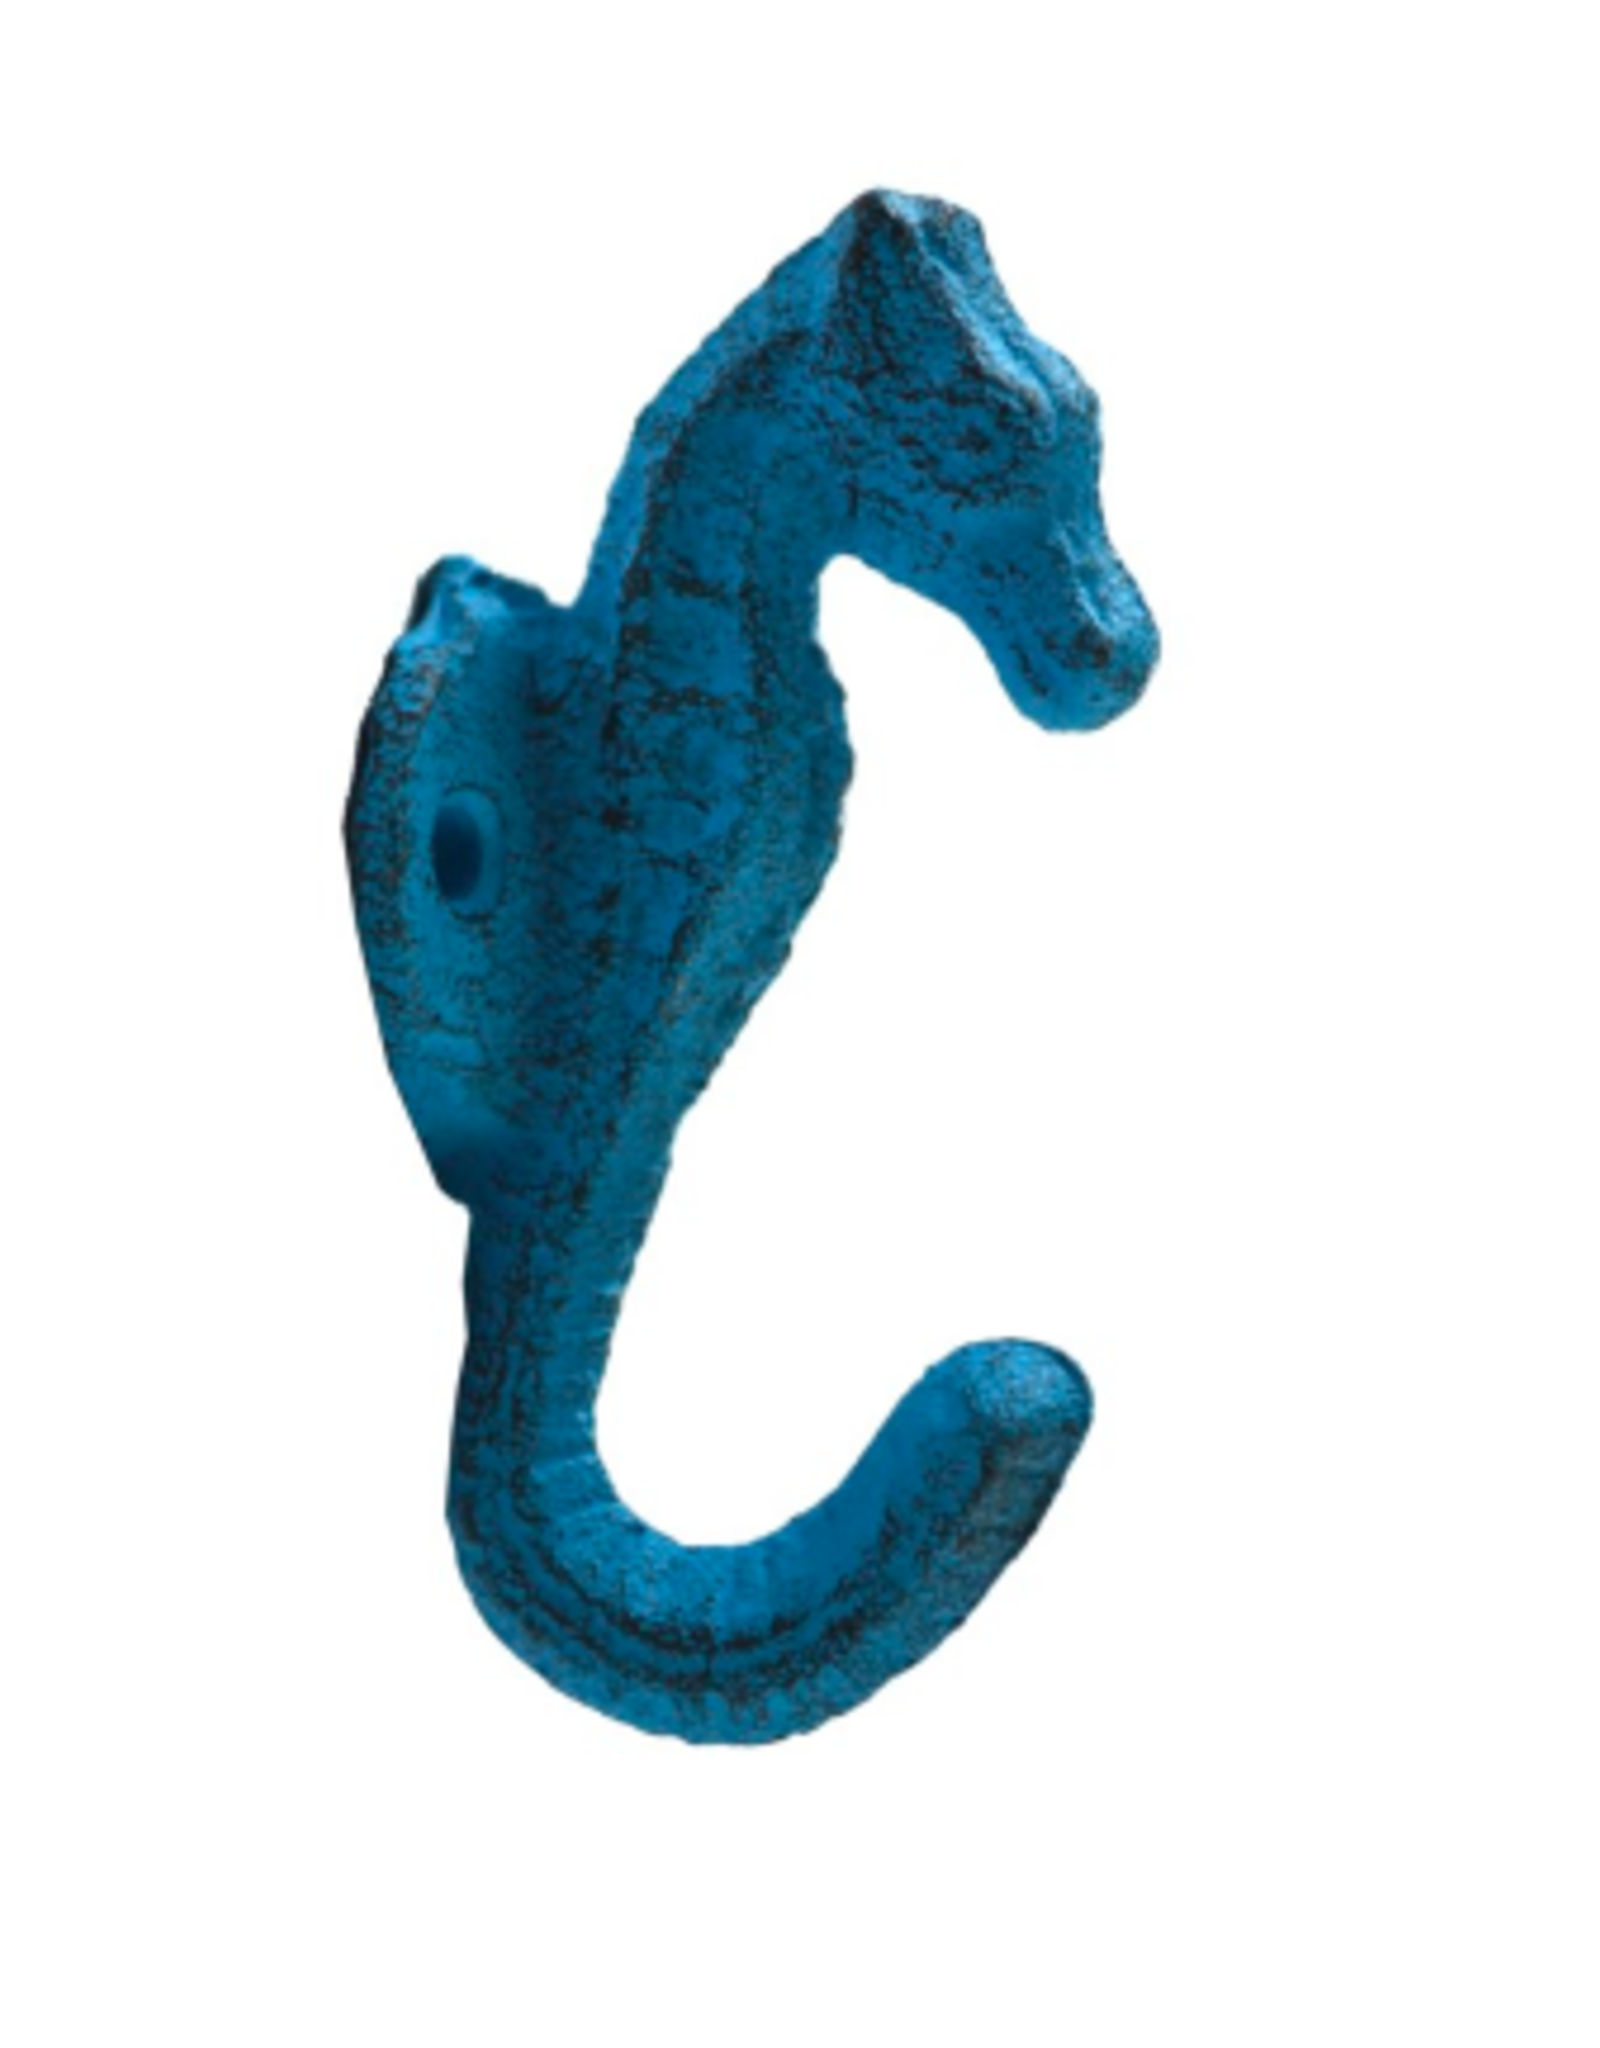 Nostalgia Hook Nostalgia Seahorse Blue 3 x 5 x 9 cm  652-003